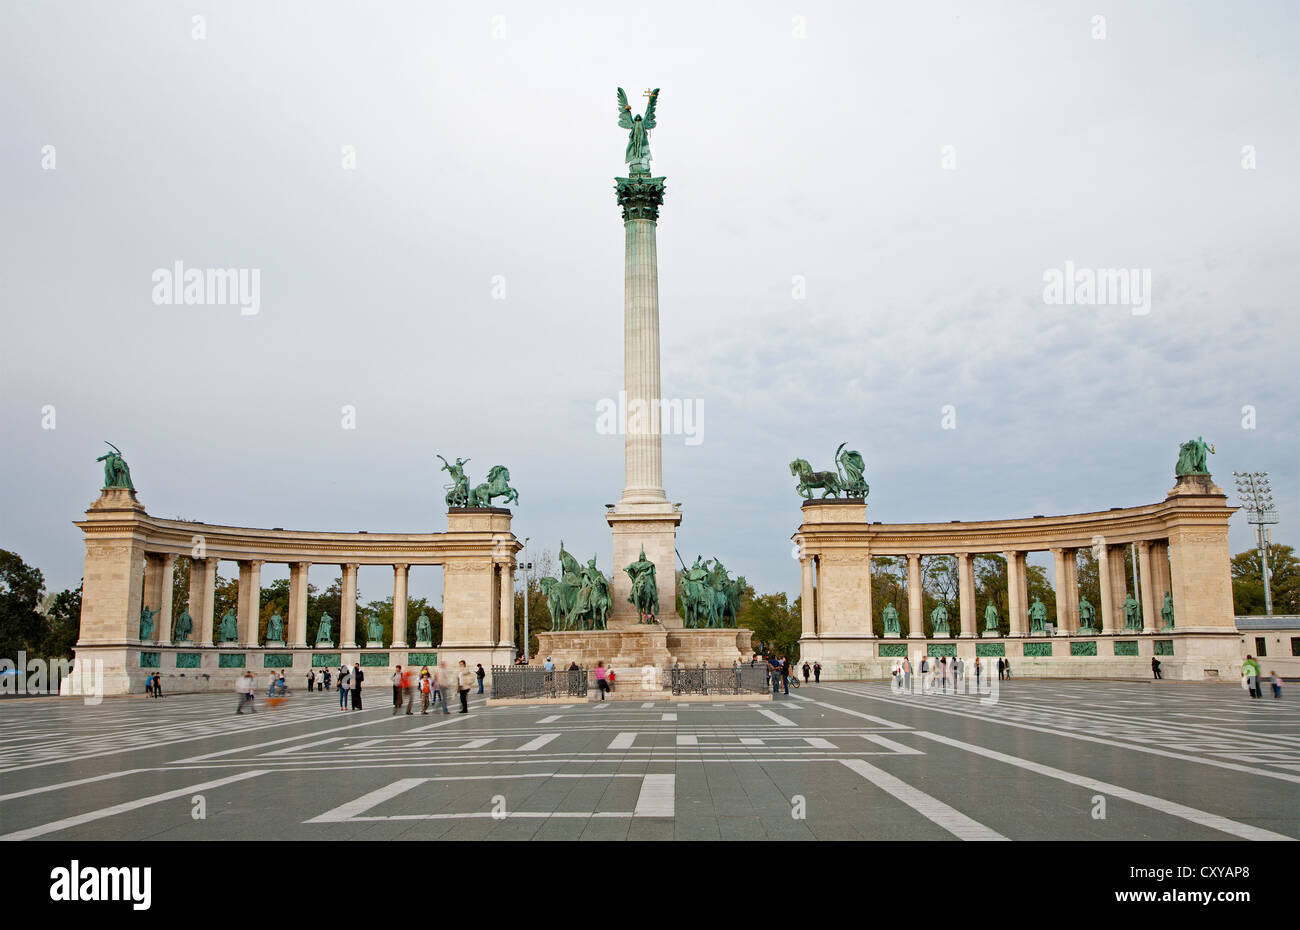 BUDAPEST - 22 SEPTEMBRE : Le Monument du millénaire en place des Héros, le 22 septembre 2012 à Budapest. Banque D'Images